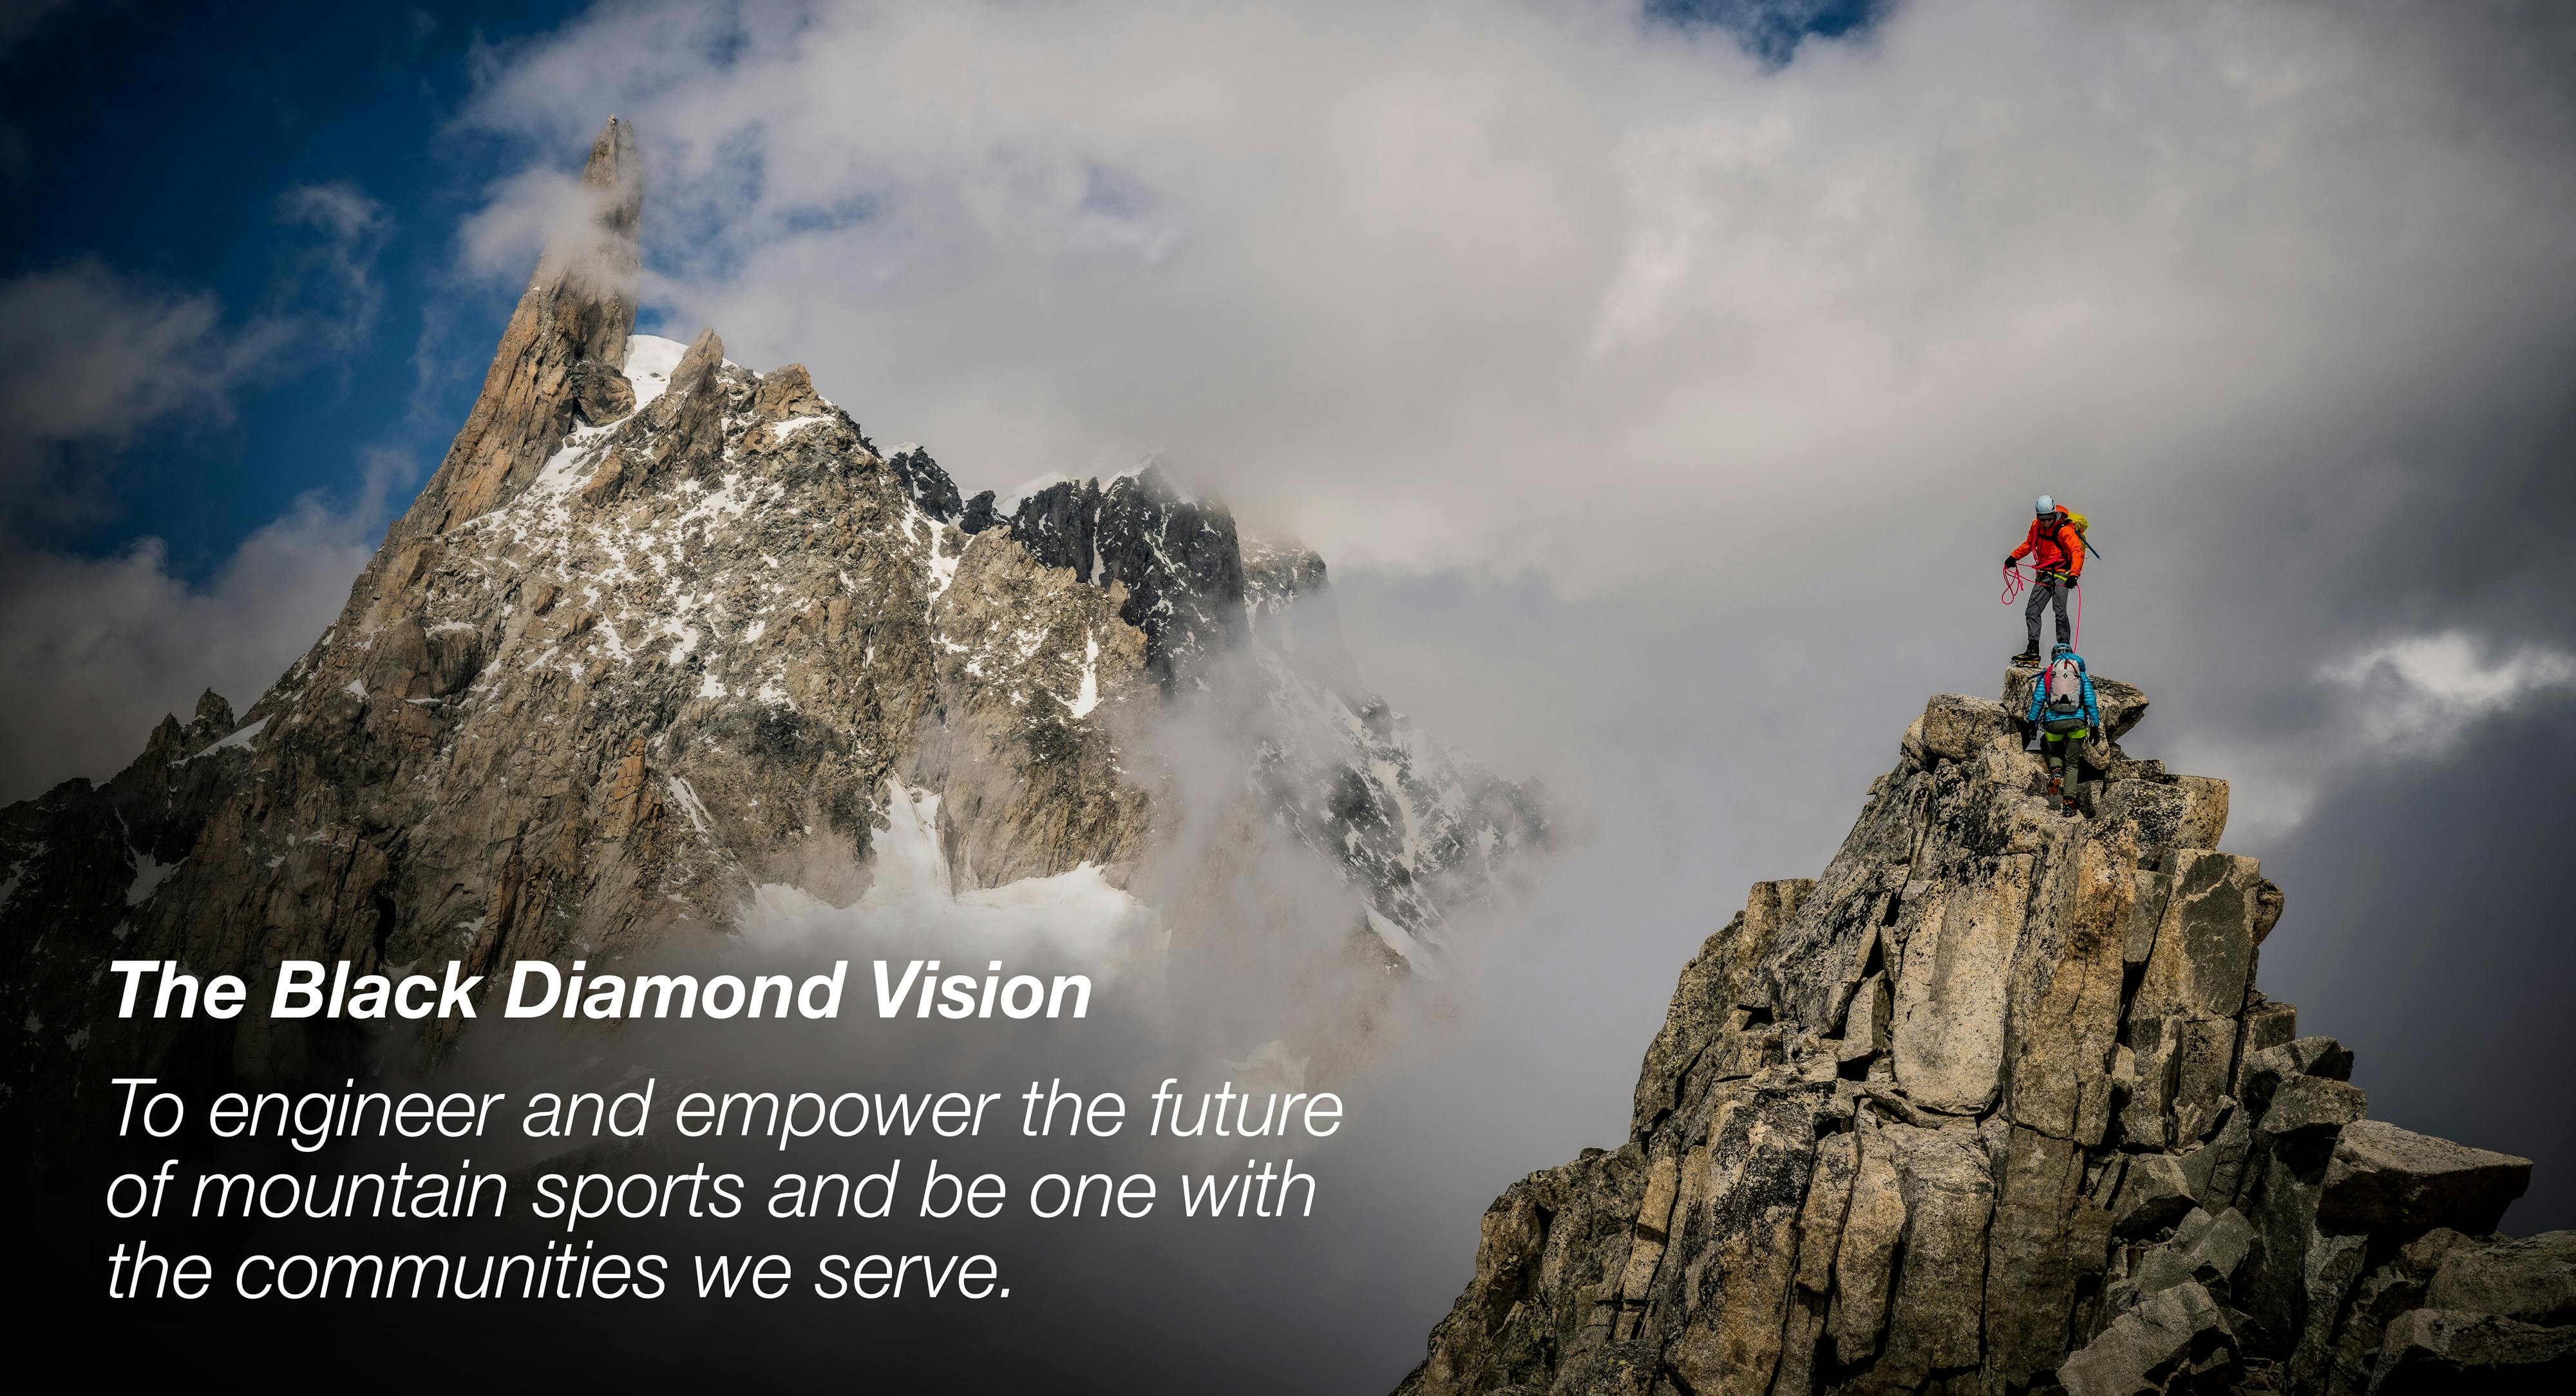 Bild des alpinen Kletterns mit dem Text: Die Black Diamond Vision. Die Zukunft des Bergsports zu gestalten und zu fördern und eins zu sein mit den Gemeinschaften, denen wir dienen.